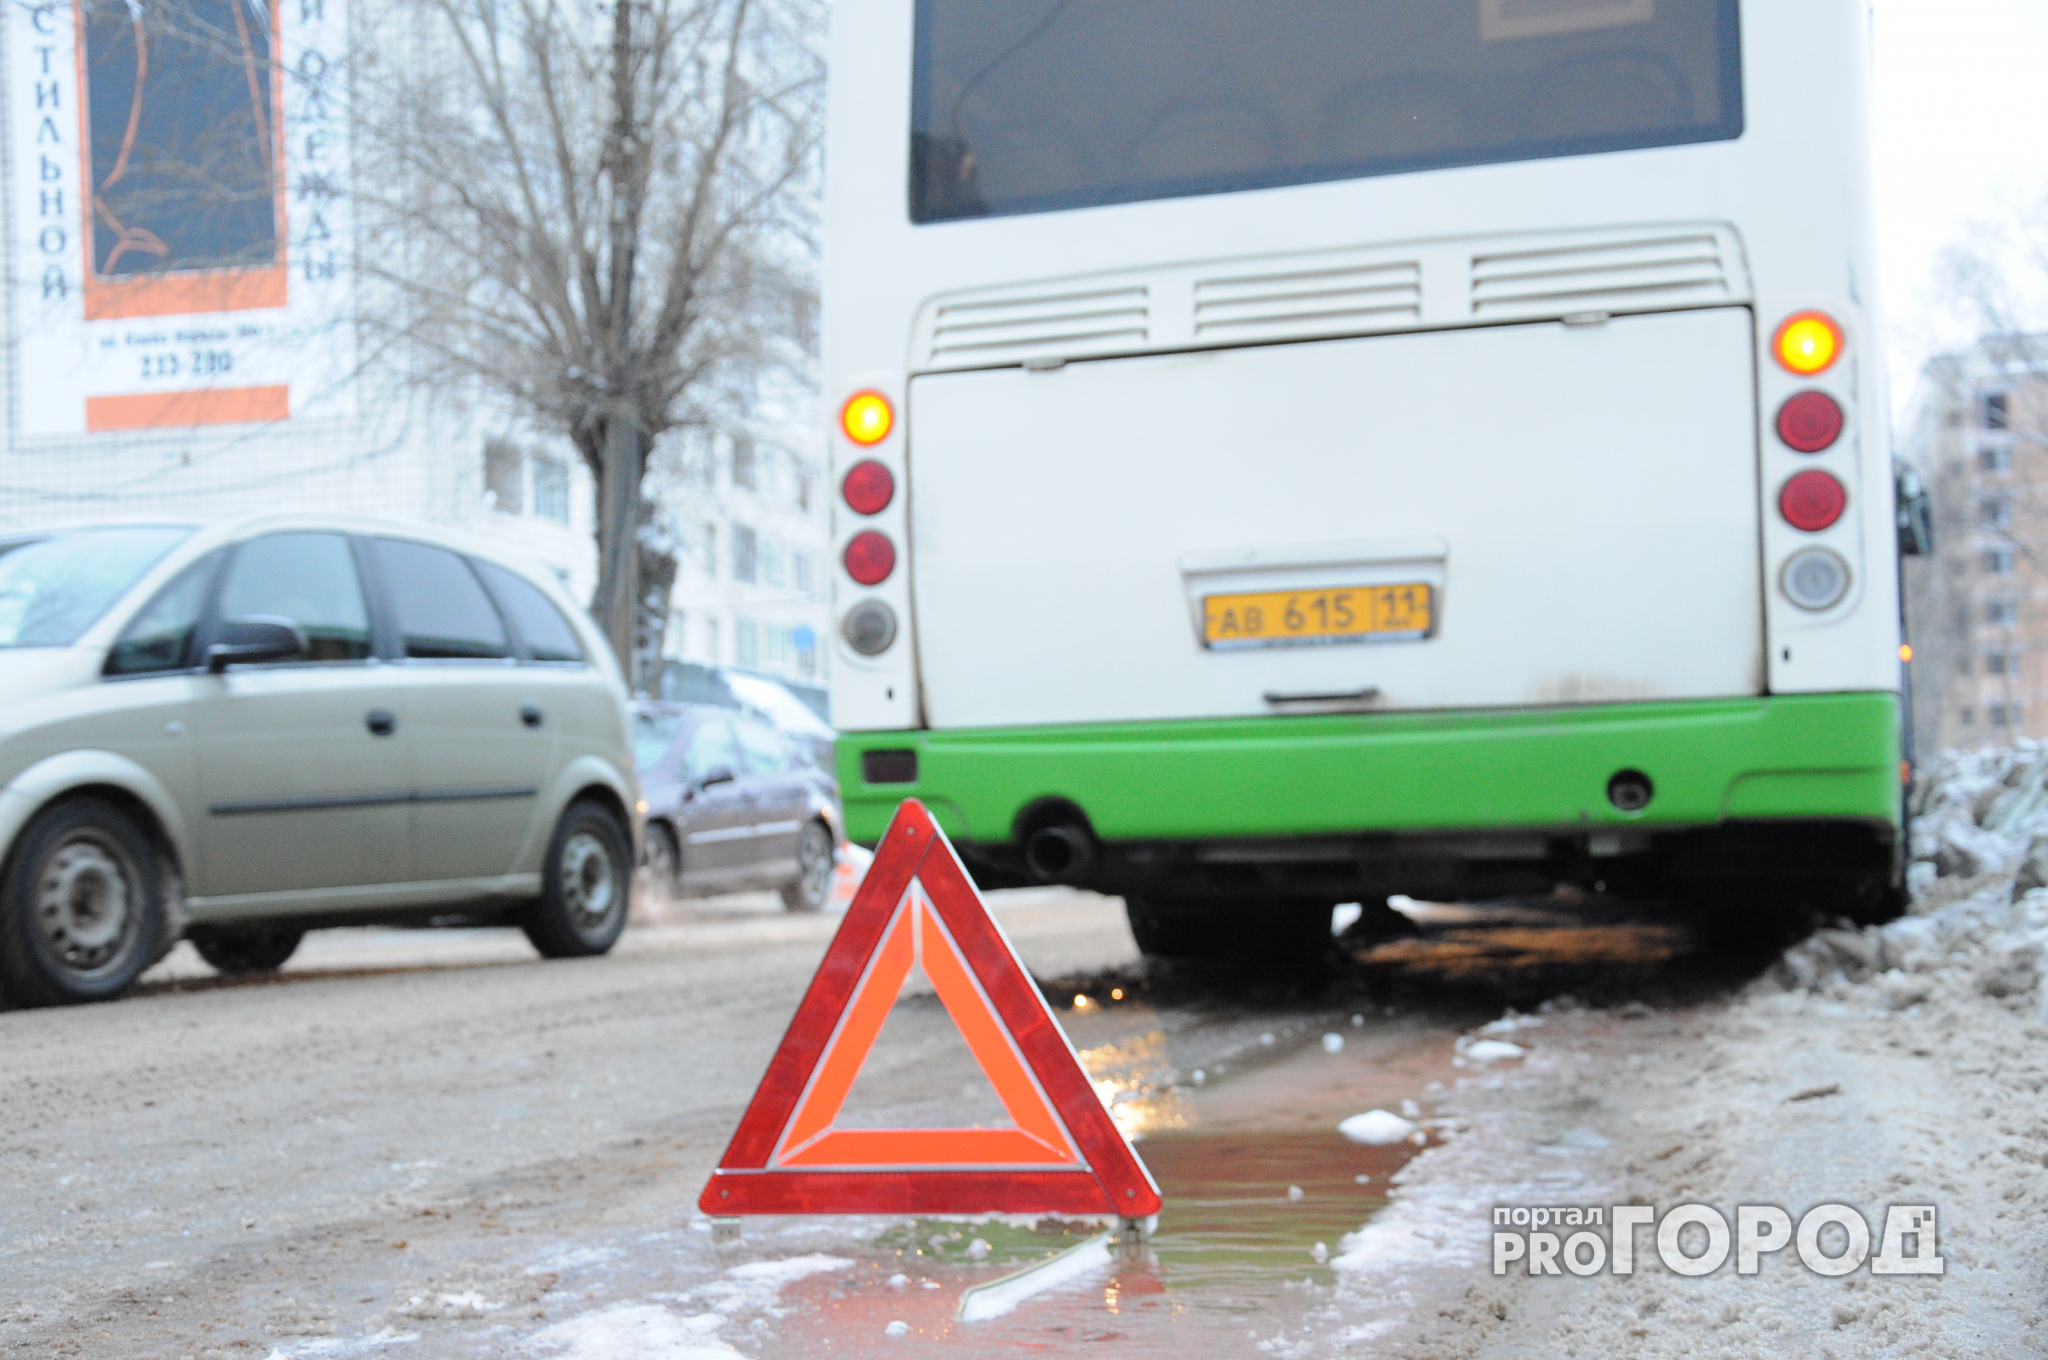 В Ярославле пассажир получил травмы при торможении автобуса